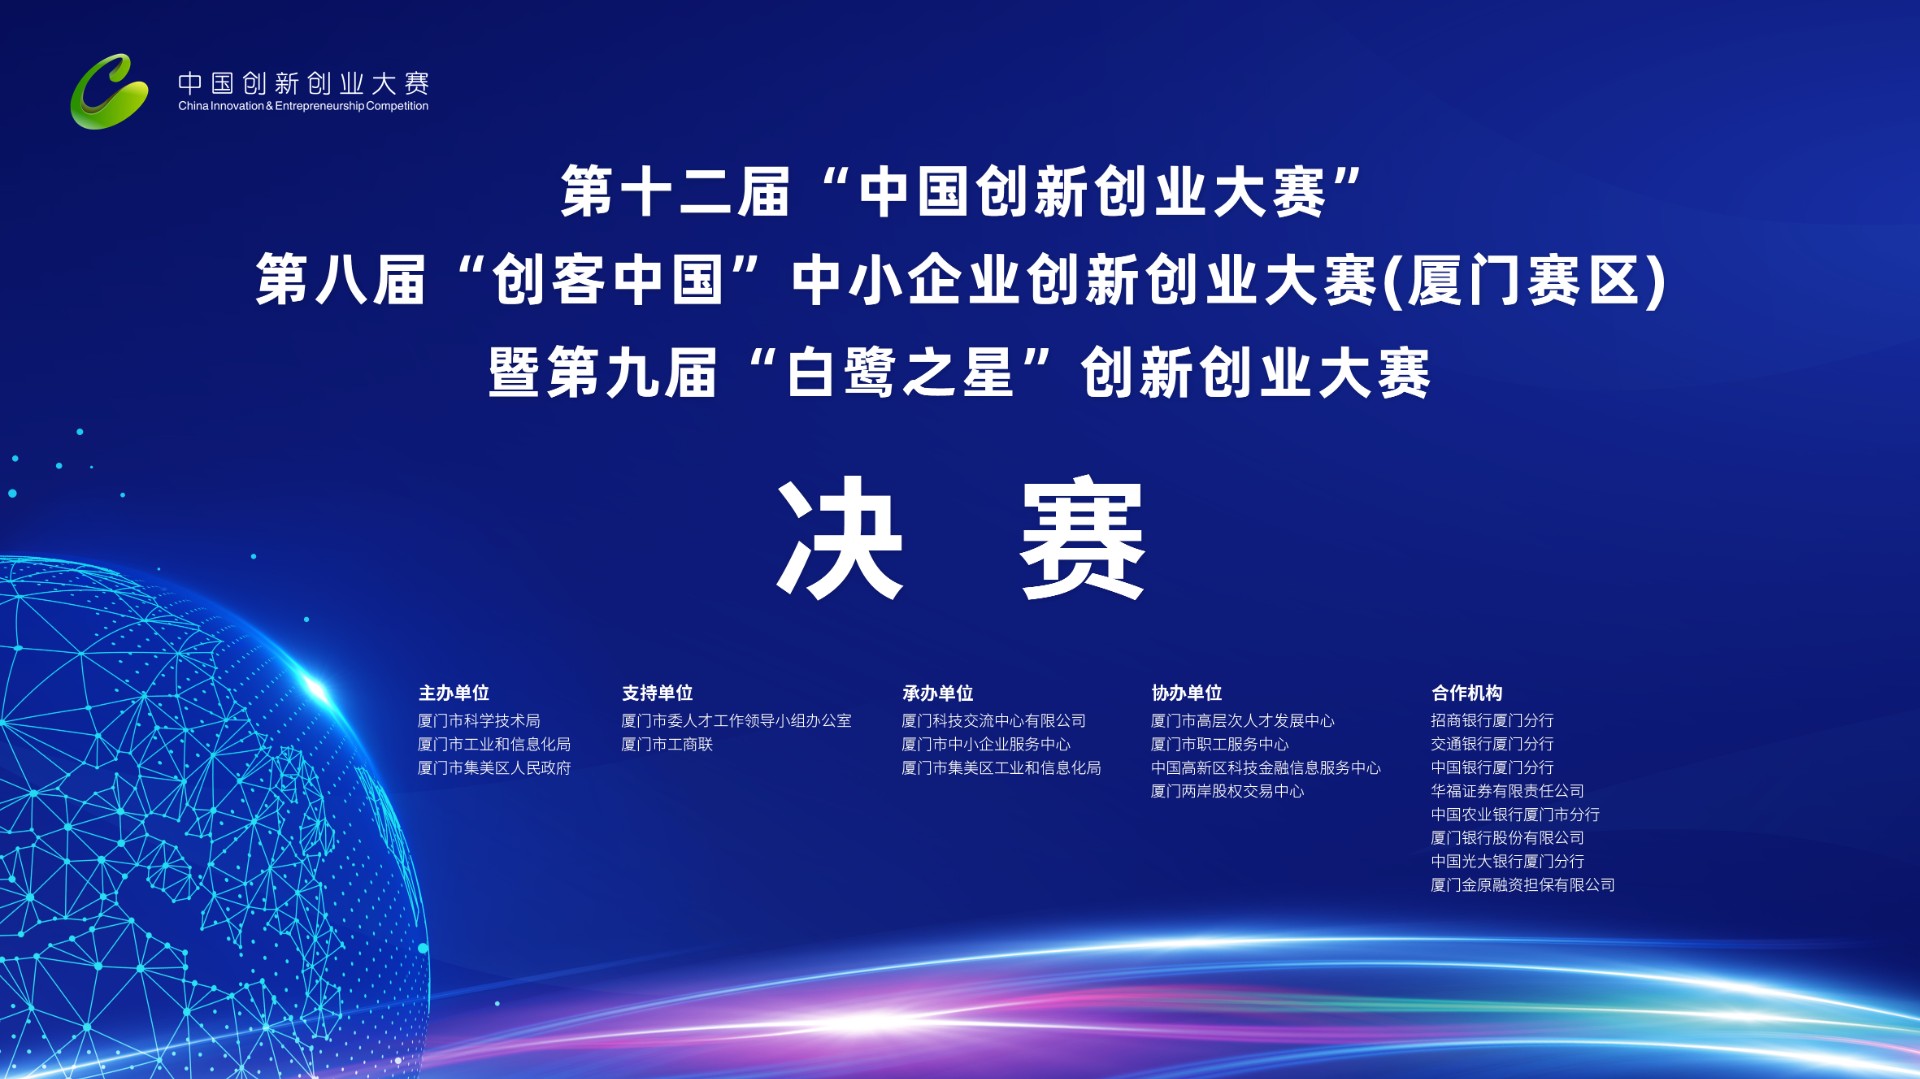 第十二届“中国创新创业大赛”、第八届“创客中国”中小企业创新创业大赛（厦门赛区）暨第九届“白鹭之星”创新创业大赛取得圆满成功！